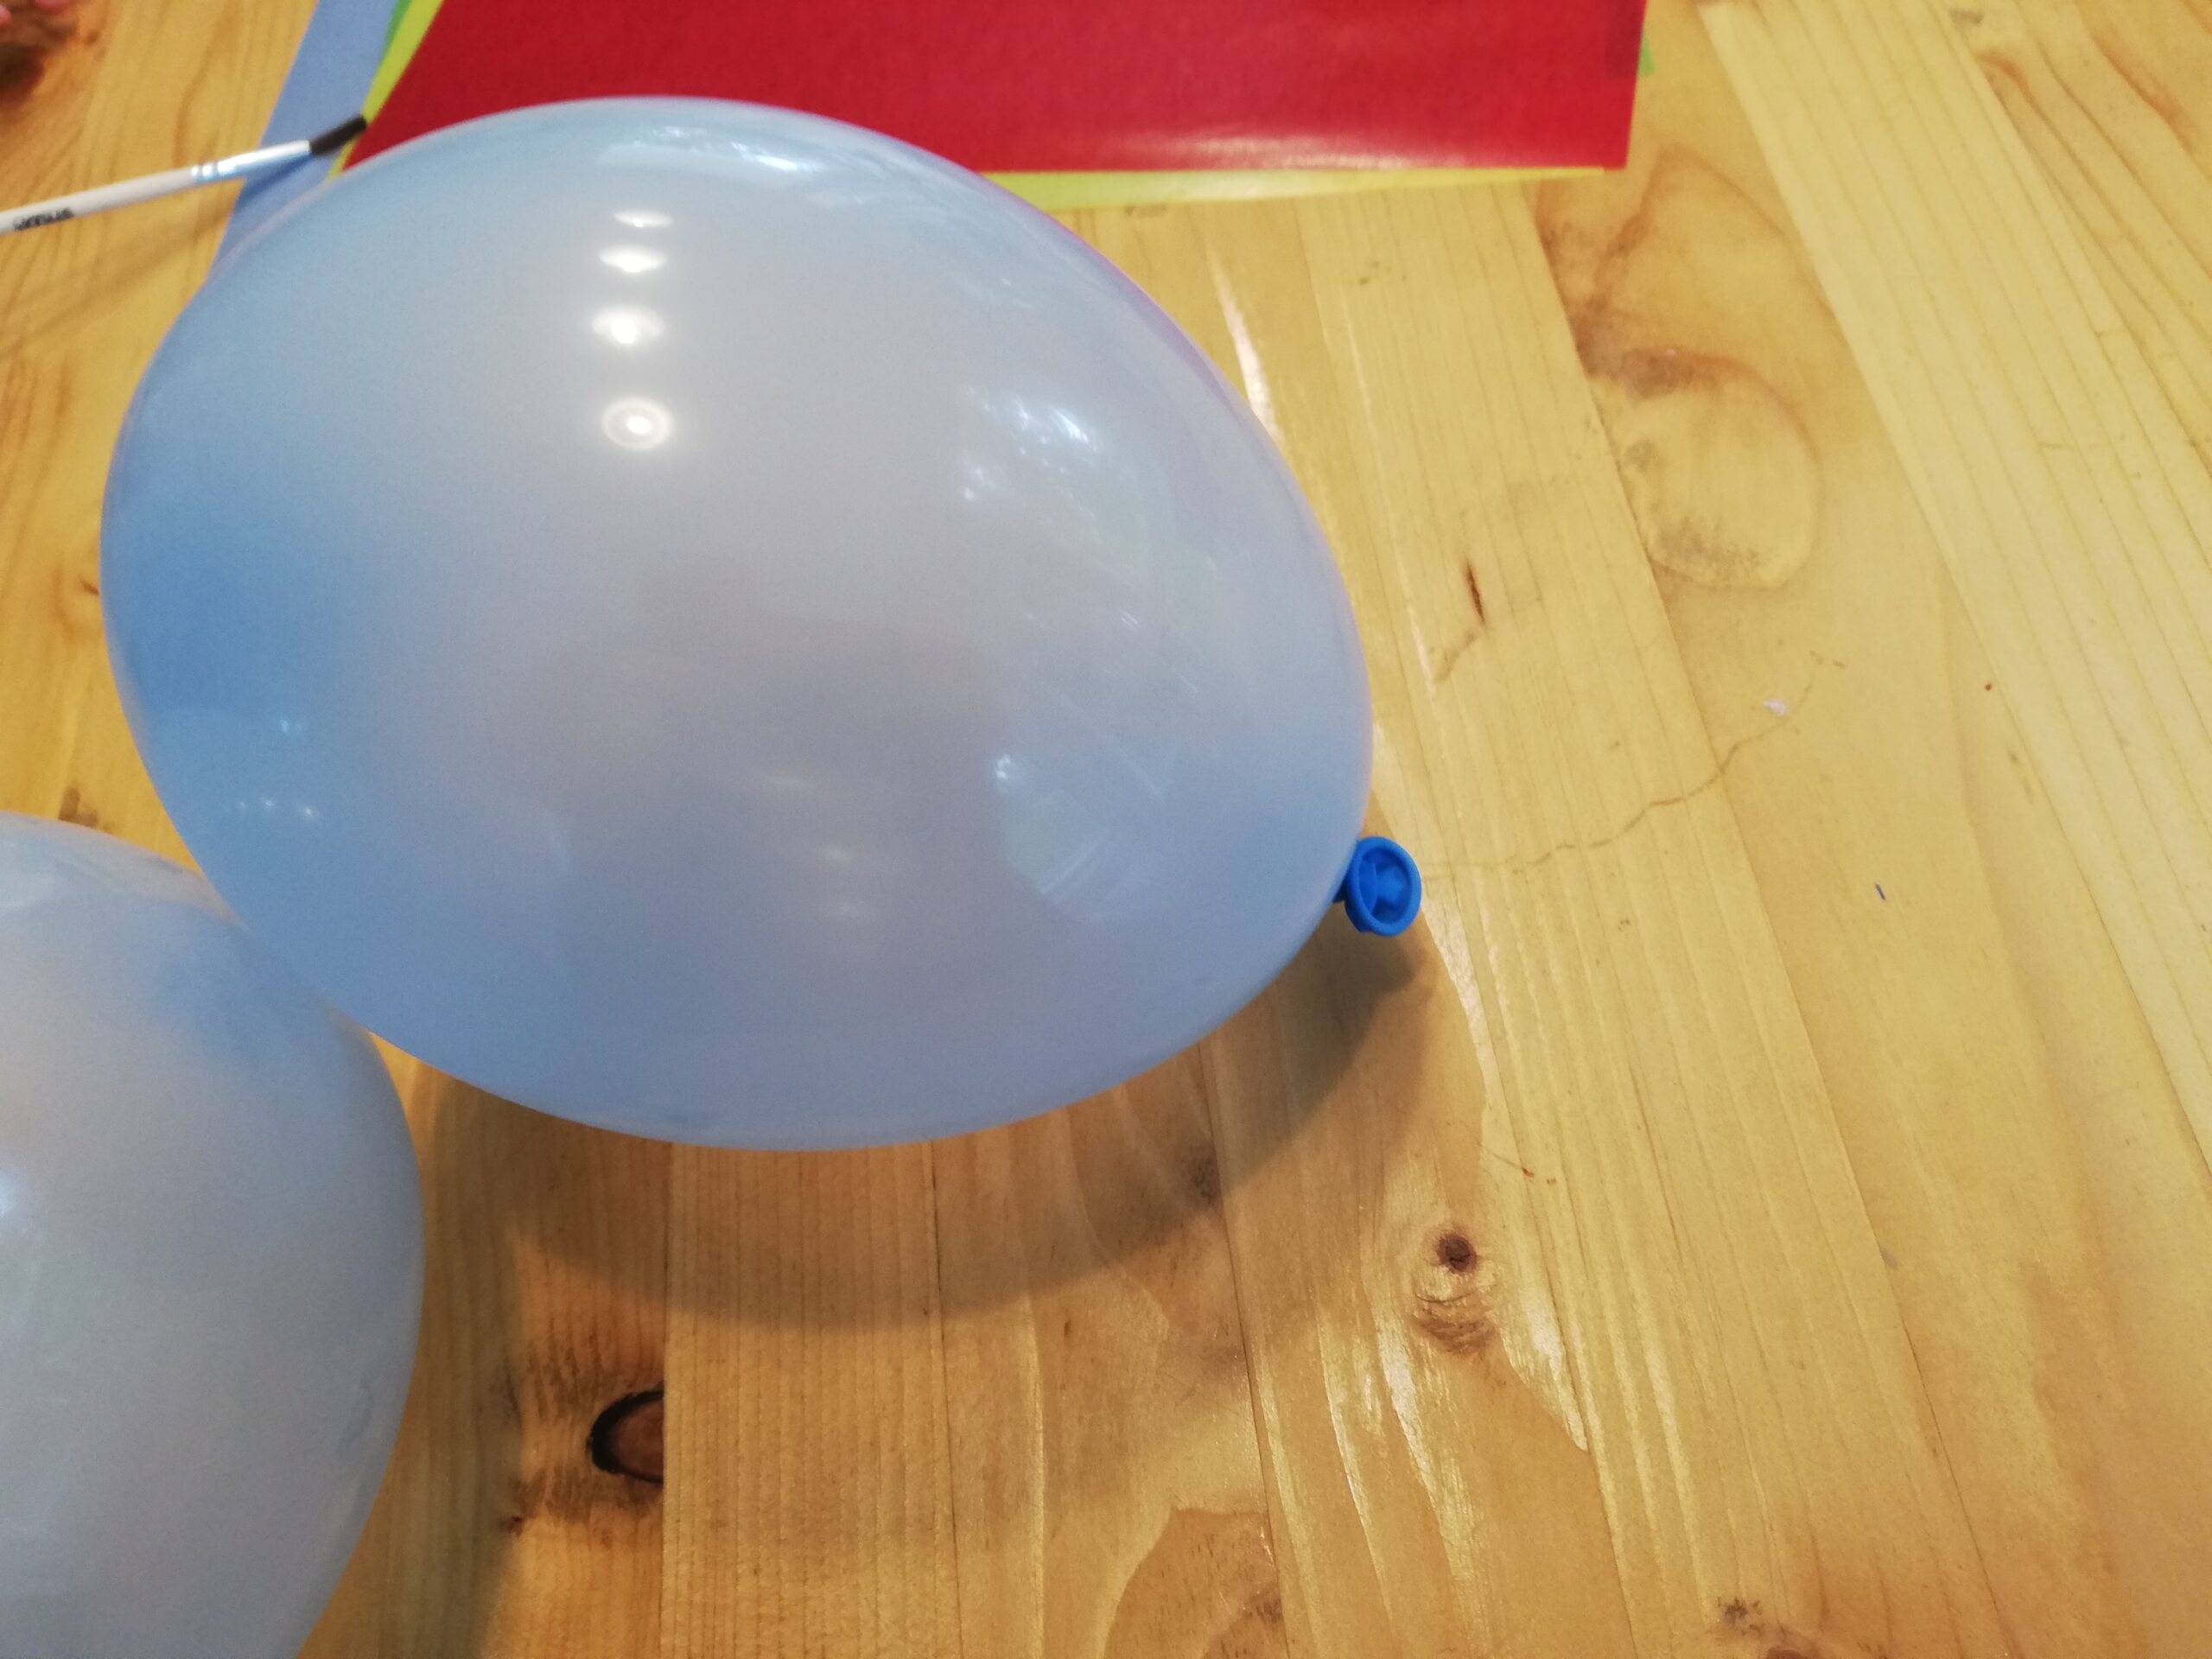 Bild zum Schritt 2 für das Bastel- und DIY-Abenteuer für Kinder: 'Blast nun einen Luftballon auf und knotet ihn zu. ...'